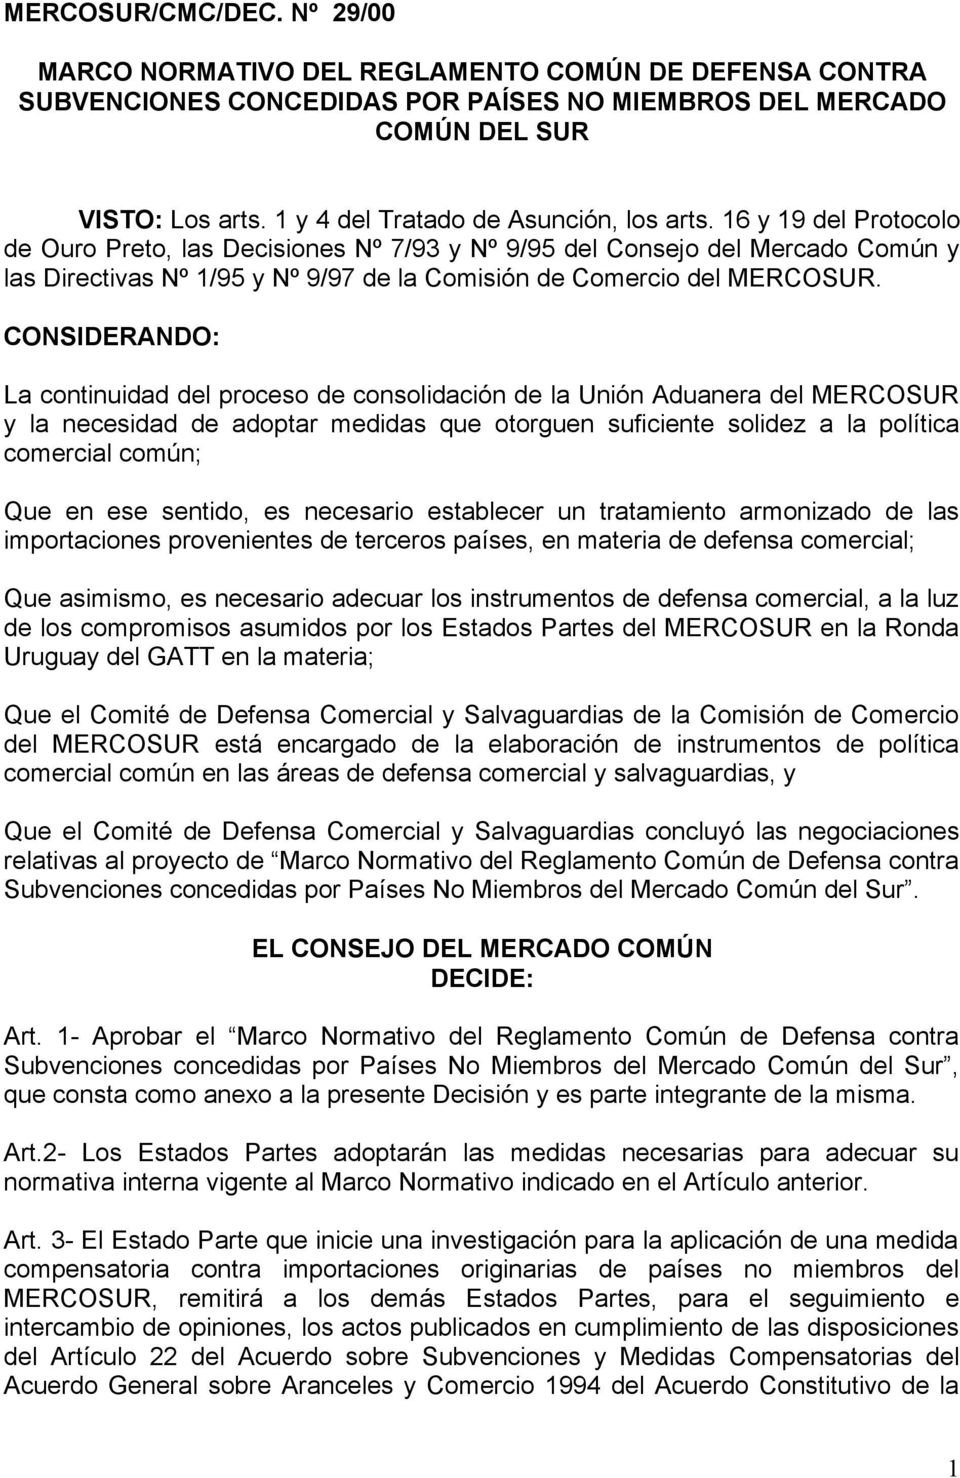 16 y 19 del Protocolo de Ouro Preto, las Decisiones Nº 7/93 y Nº 9/95 del Consejo del Mercado Común y las Directivas Nº 1/95 y Nº 9/97 de la Comisión de Comercio del MERCOSUR.